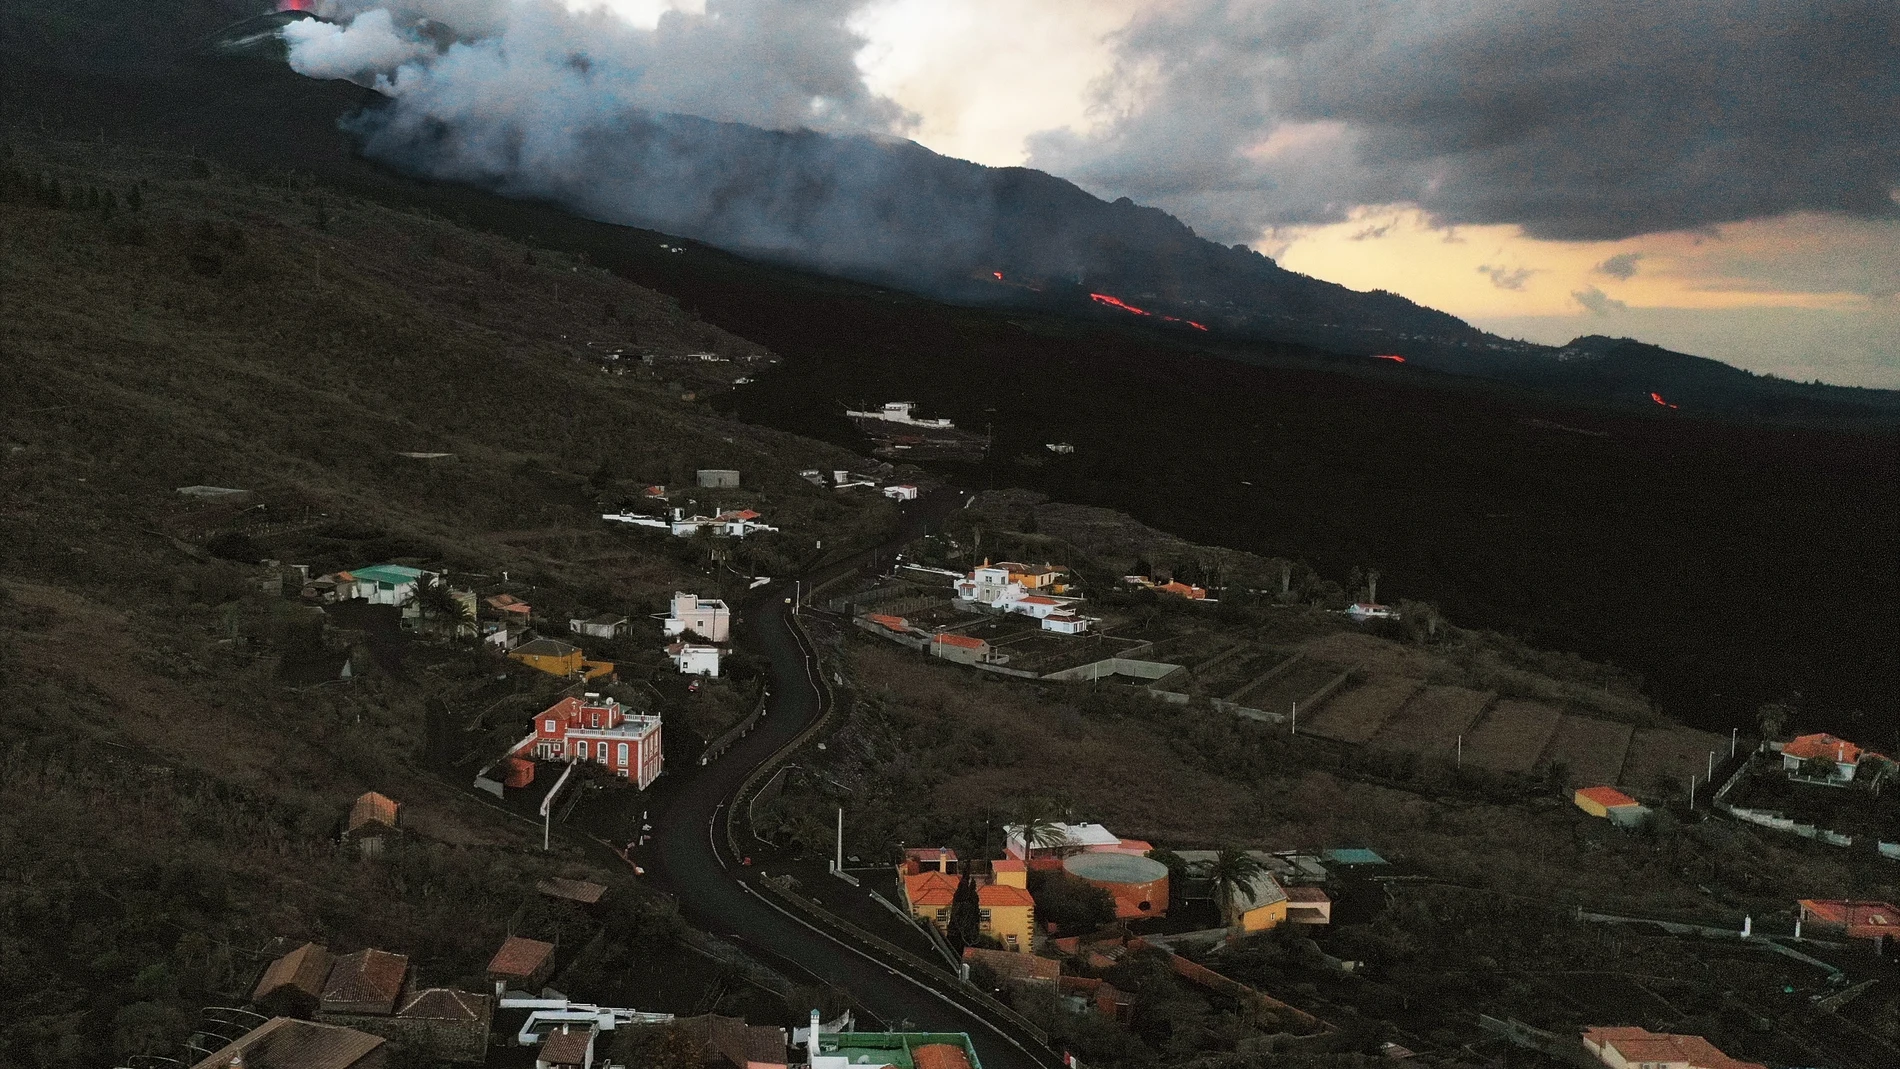 La erupción del volcán de La Palma